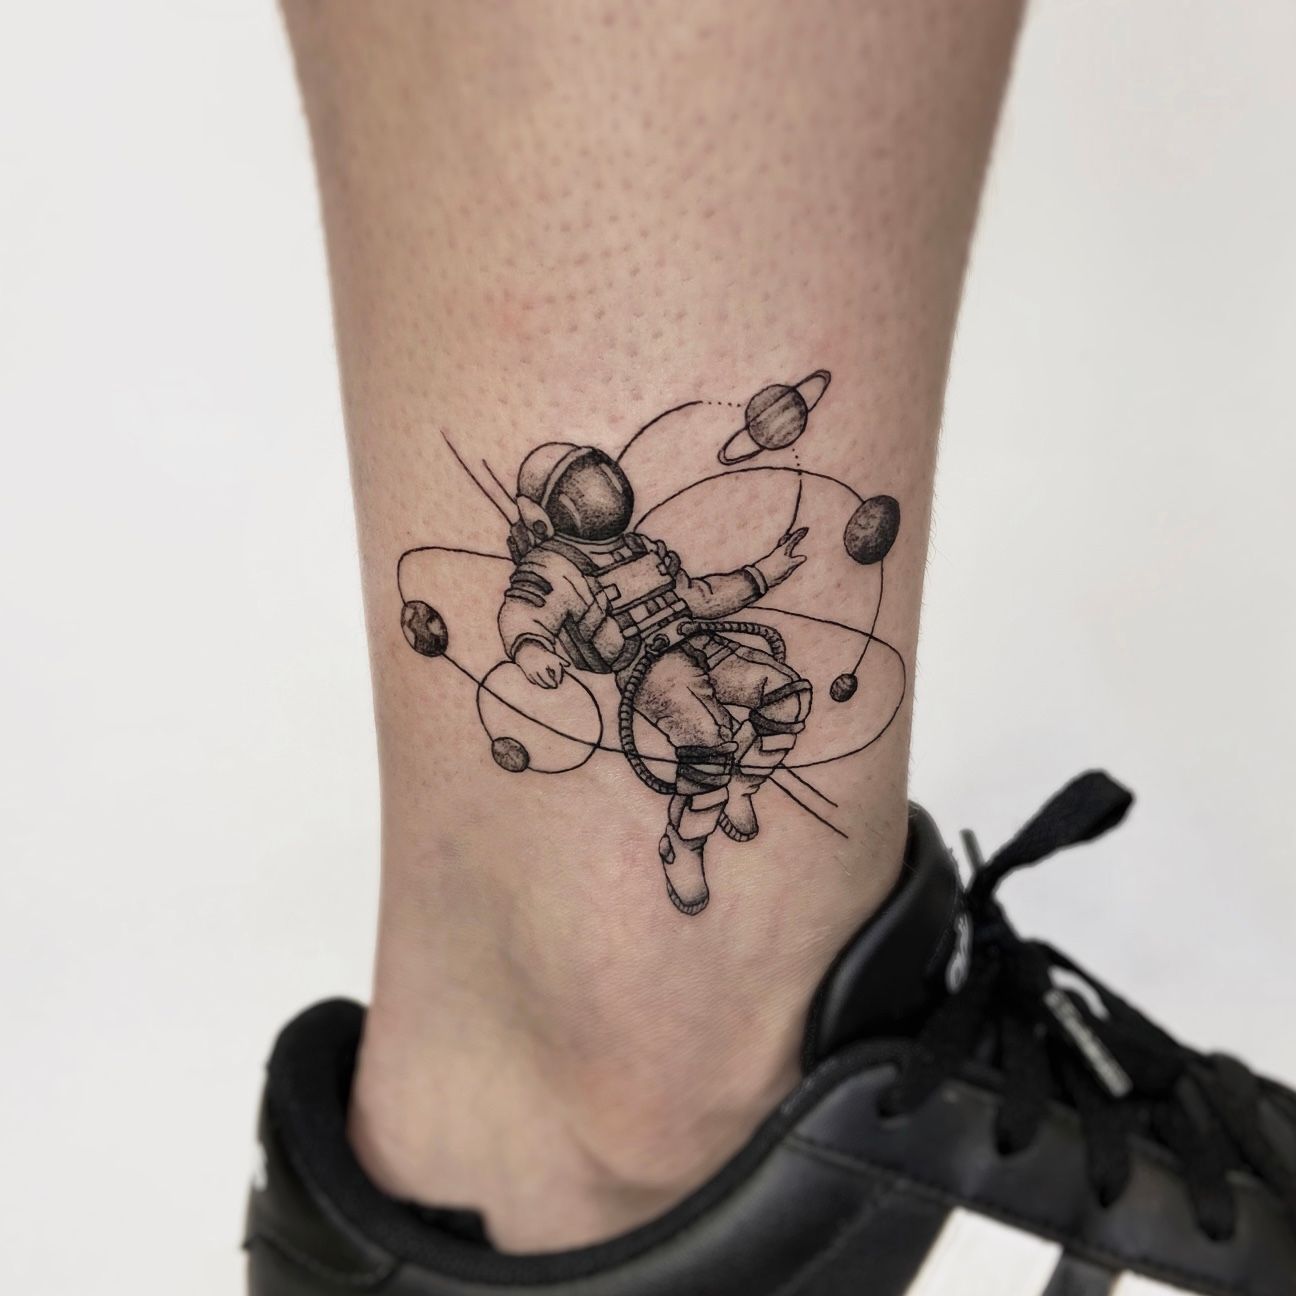 x-post from r/tattoos - My geometric astronaut tattoo by Murrt,  Philadelphia : r/pics